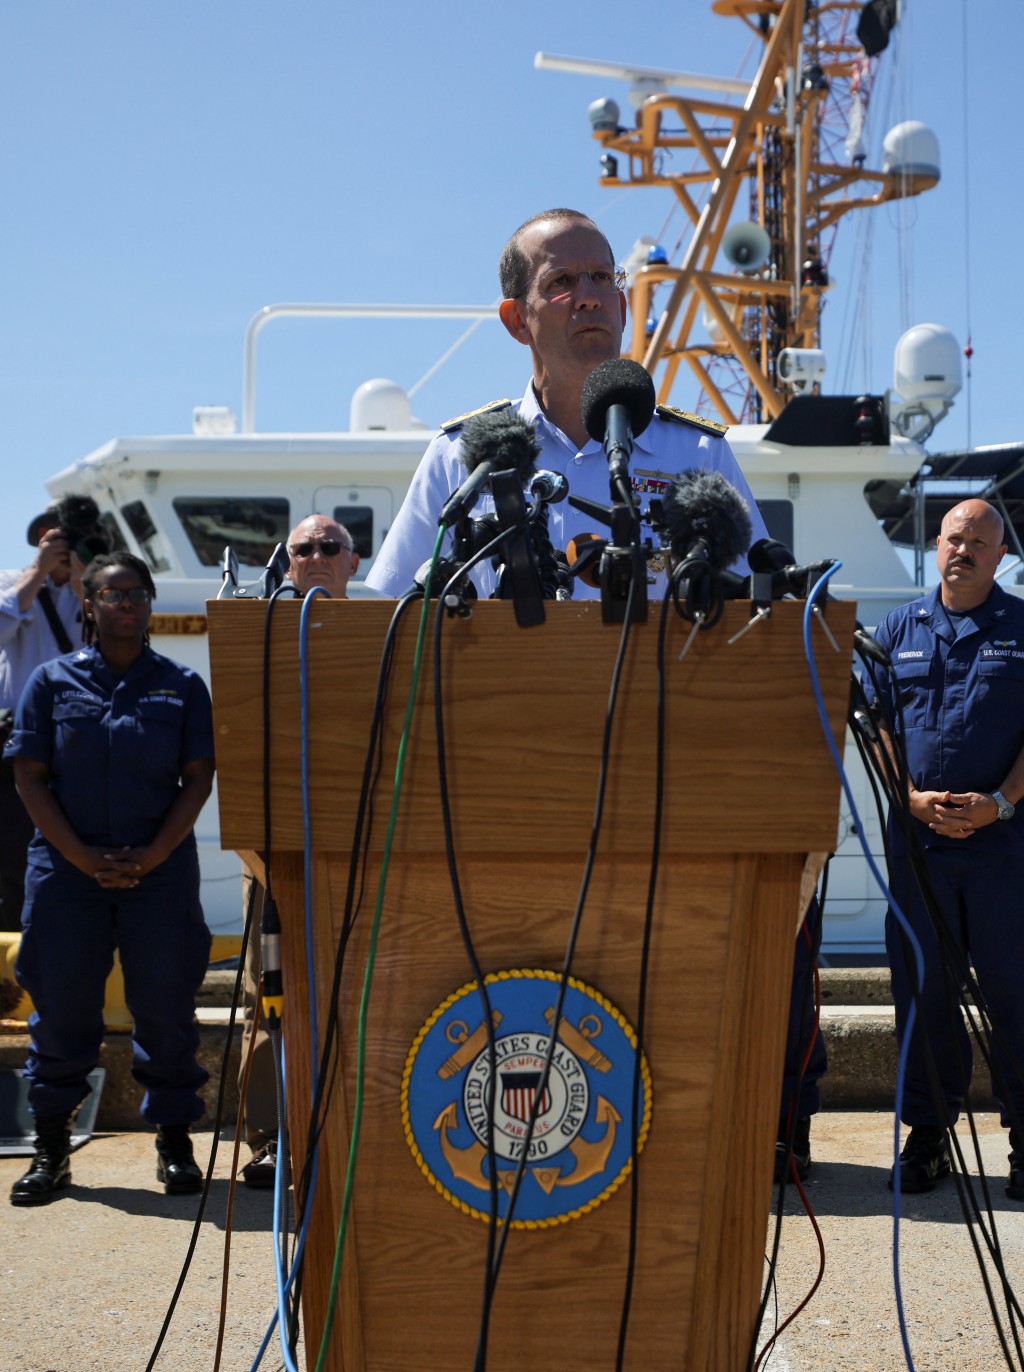 第一海岸警卫队地区指挥官、海军少将莫格更新了失踪的海洋之门潜水器的搜索情况。路透社